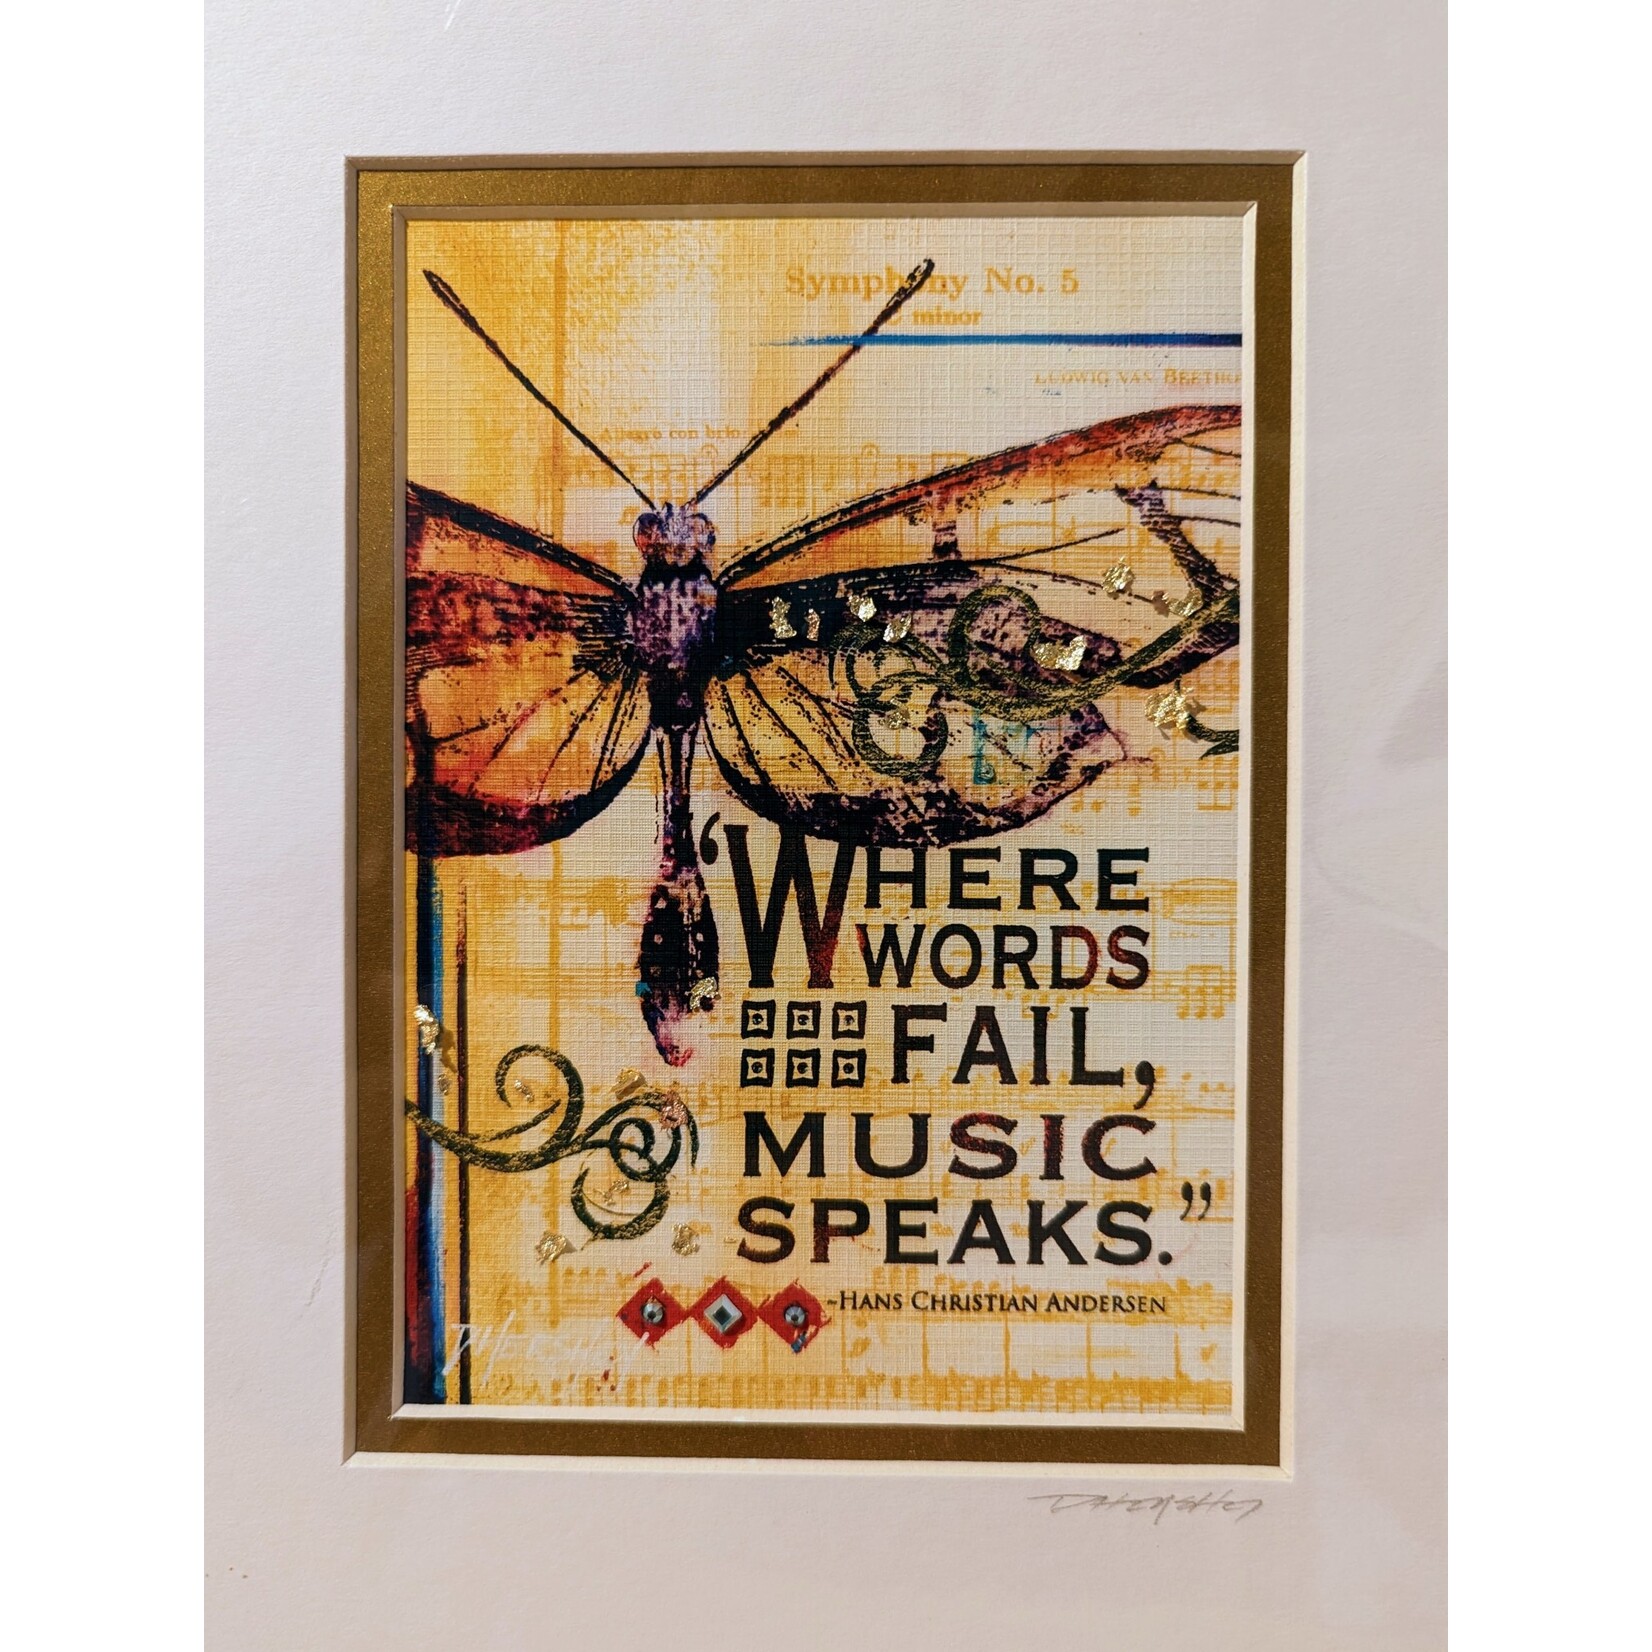 Deborah Hershey Designs "Where Words Fail, Music Speaks" - matted print